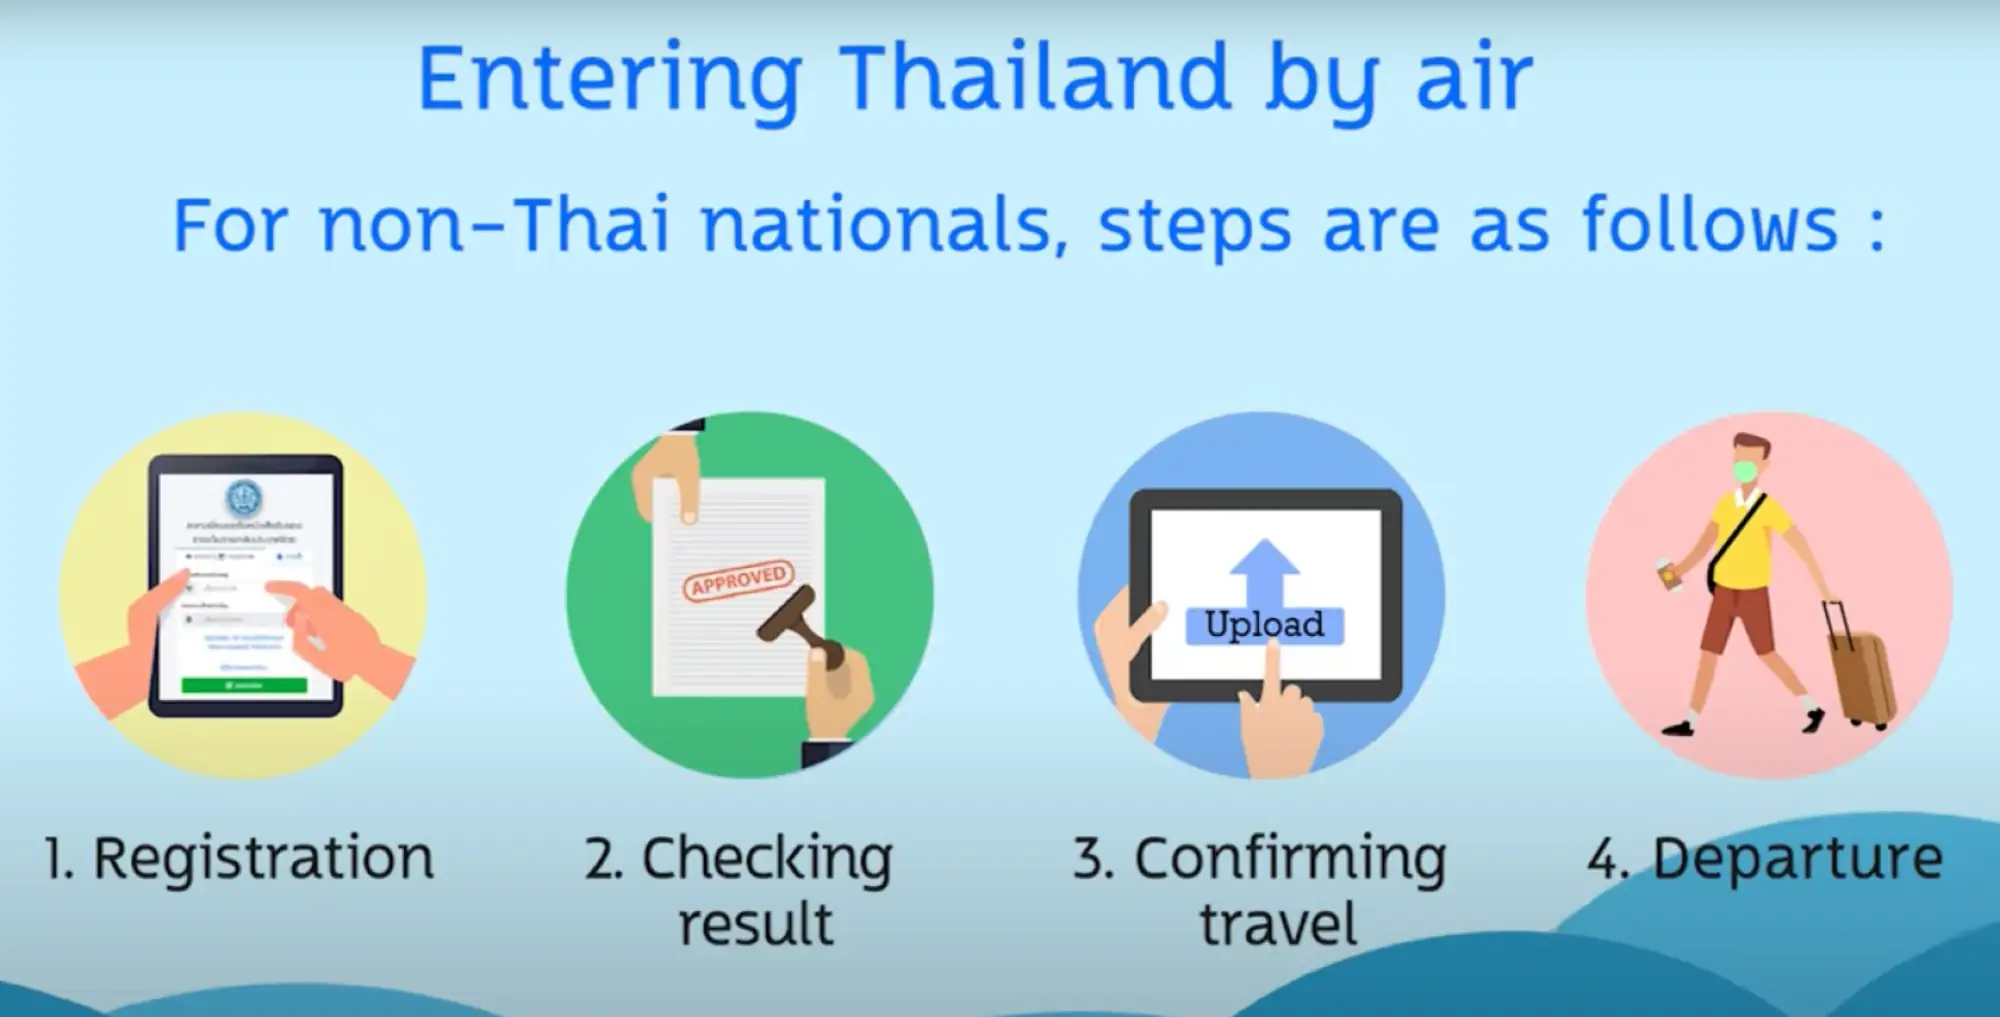 泰國入境許可證申請流程及步驟（圖片來源：擷取自Thai Consular Online官方影片）